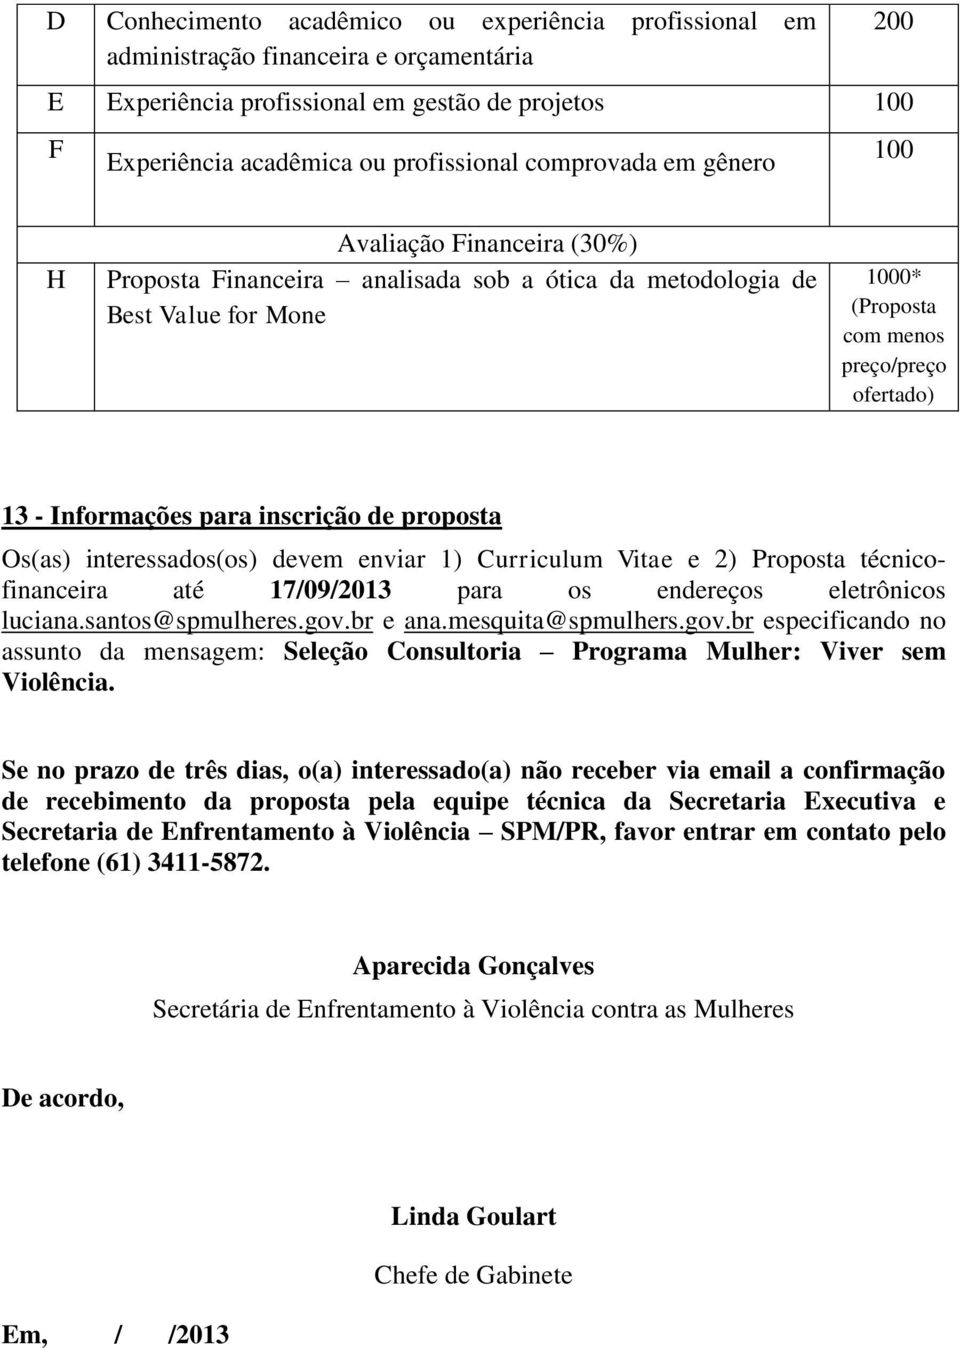 inscrição de proposta Os(as) interessados(os) devem enviar 1) Curriculum Vitae e 2) Proposta técnicofinanceira até 17/09/2013 para os endereços eletrônicos luciana.santos@spmulheres.gov.br e ana.